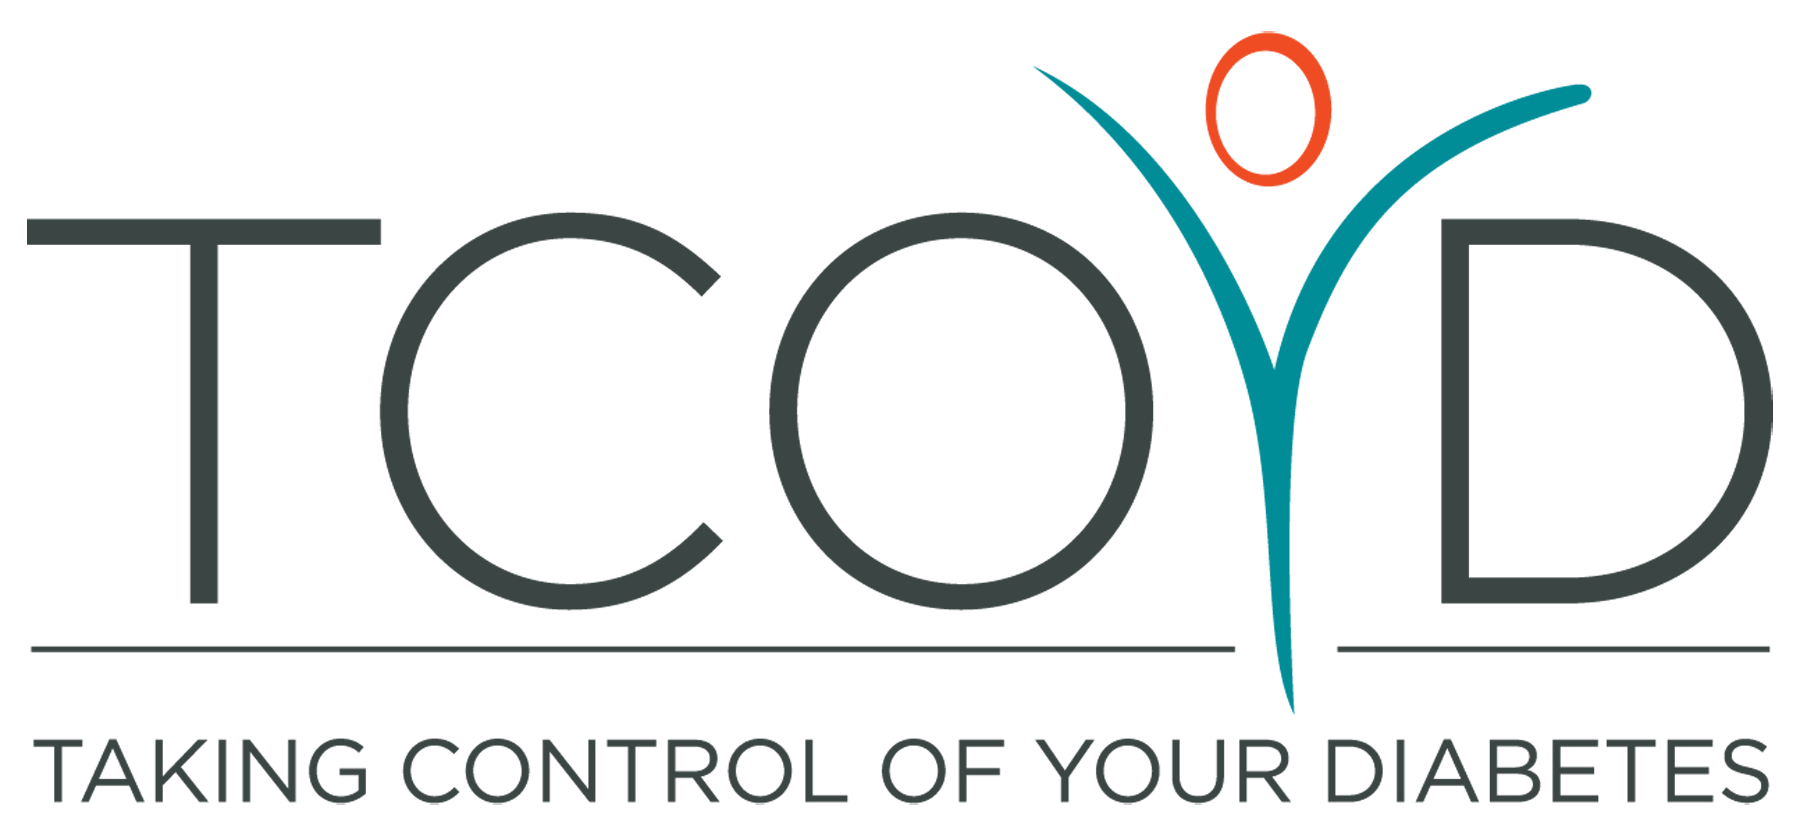 TCOYD Logo